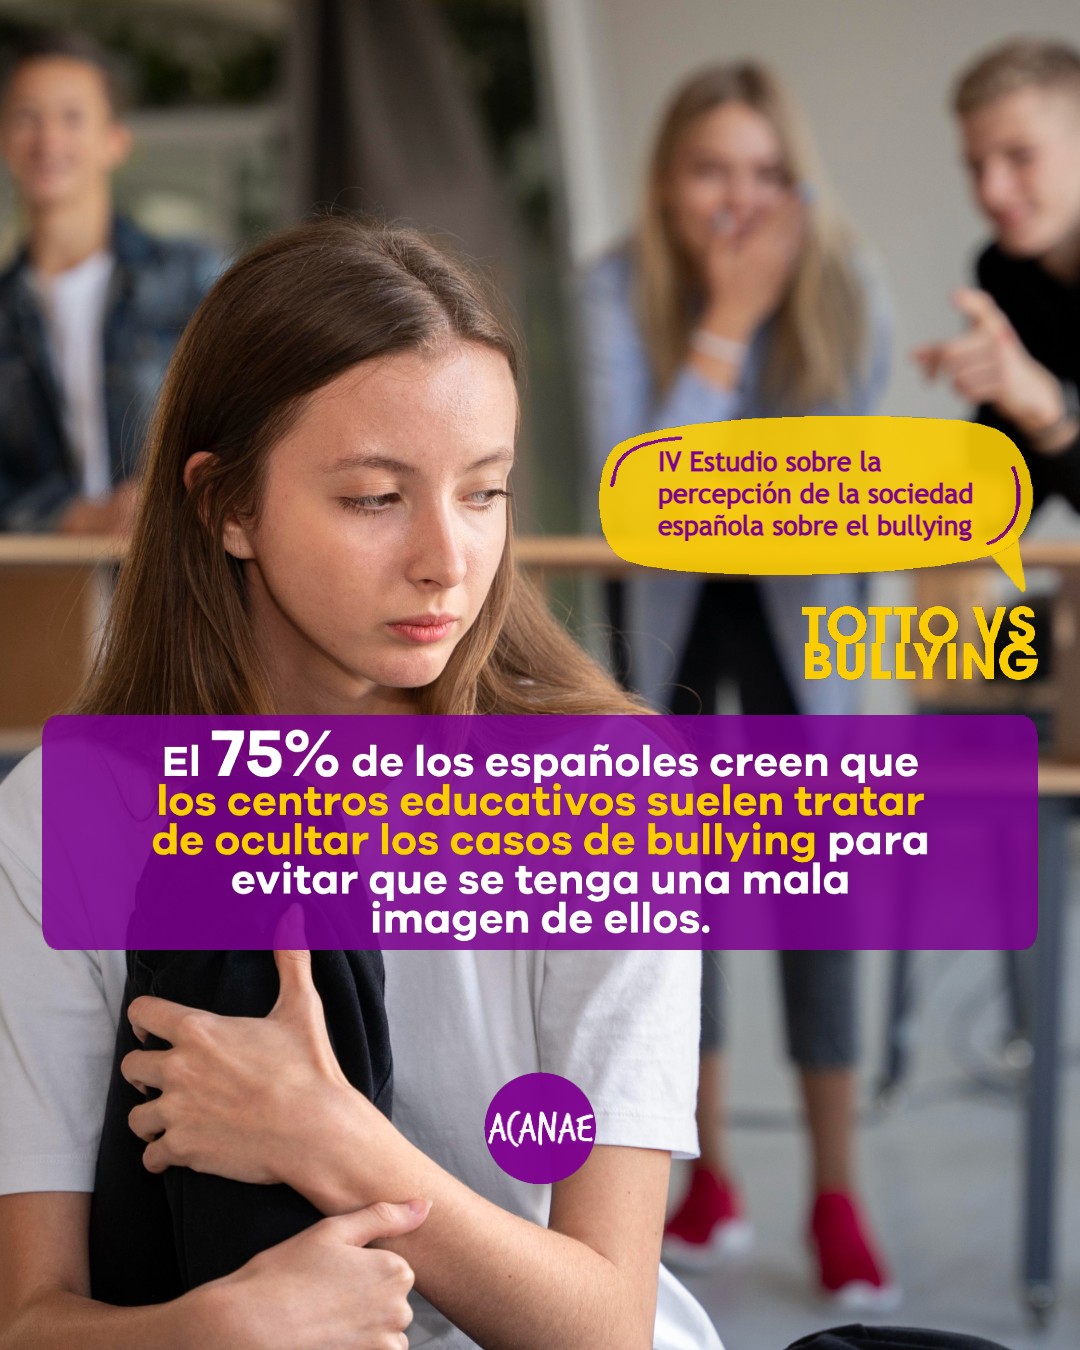 El 75% de los españoles creen que los centros educativos suelen tratar de ocultar los casos de bullying para evitar que se tenga una mala imagen de ellos.